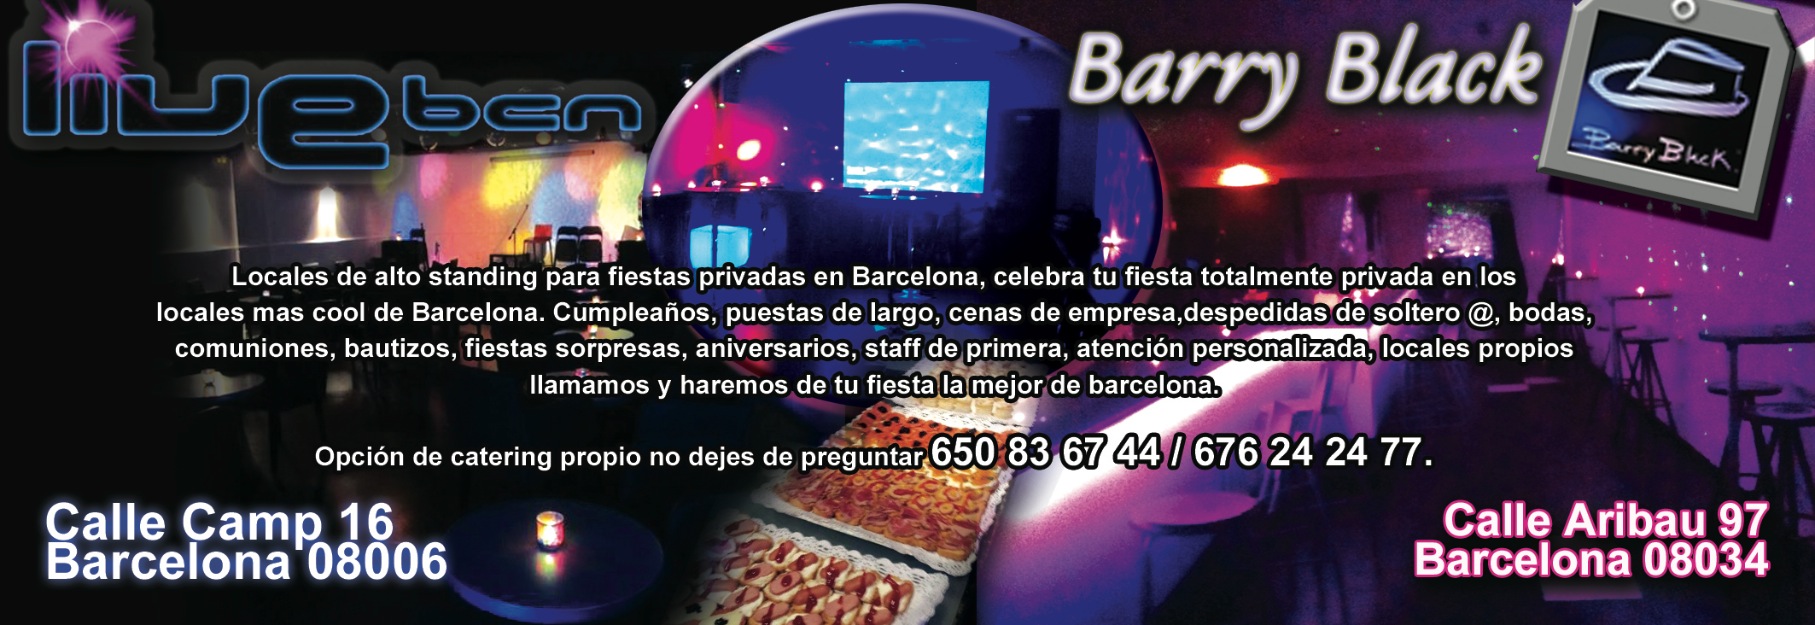 150€ alquila locales para fiestas privadas barcelona